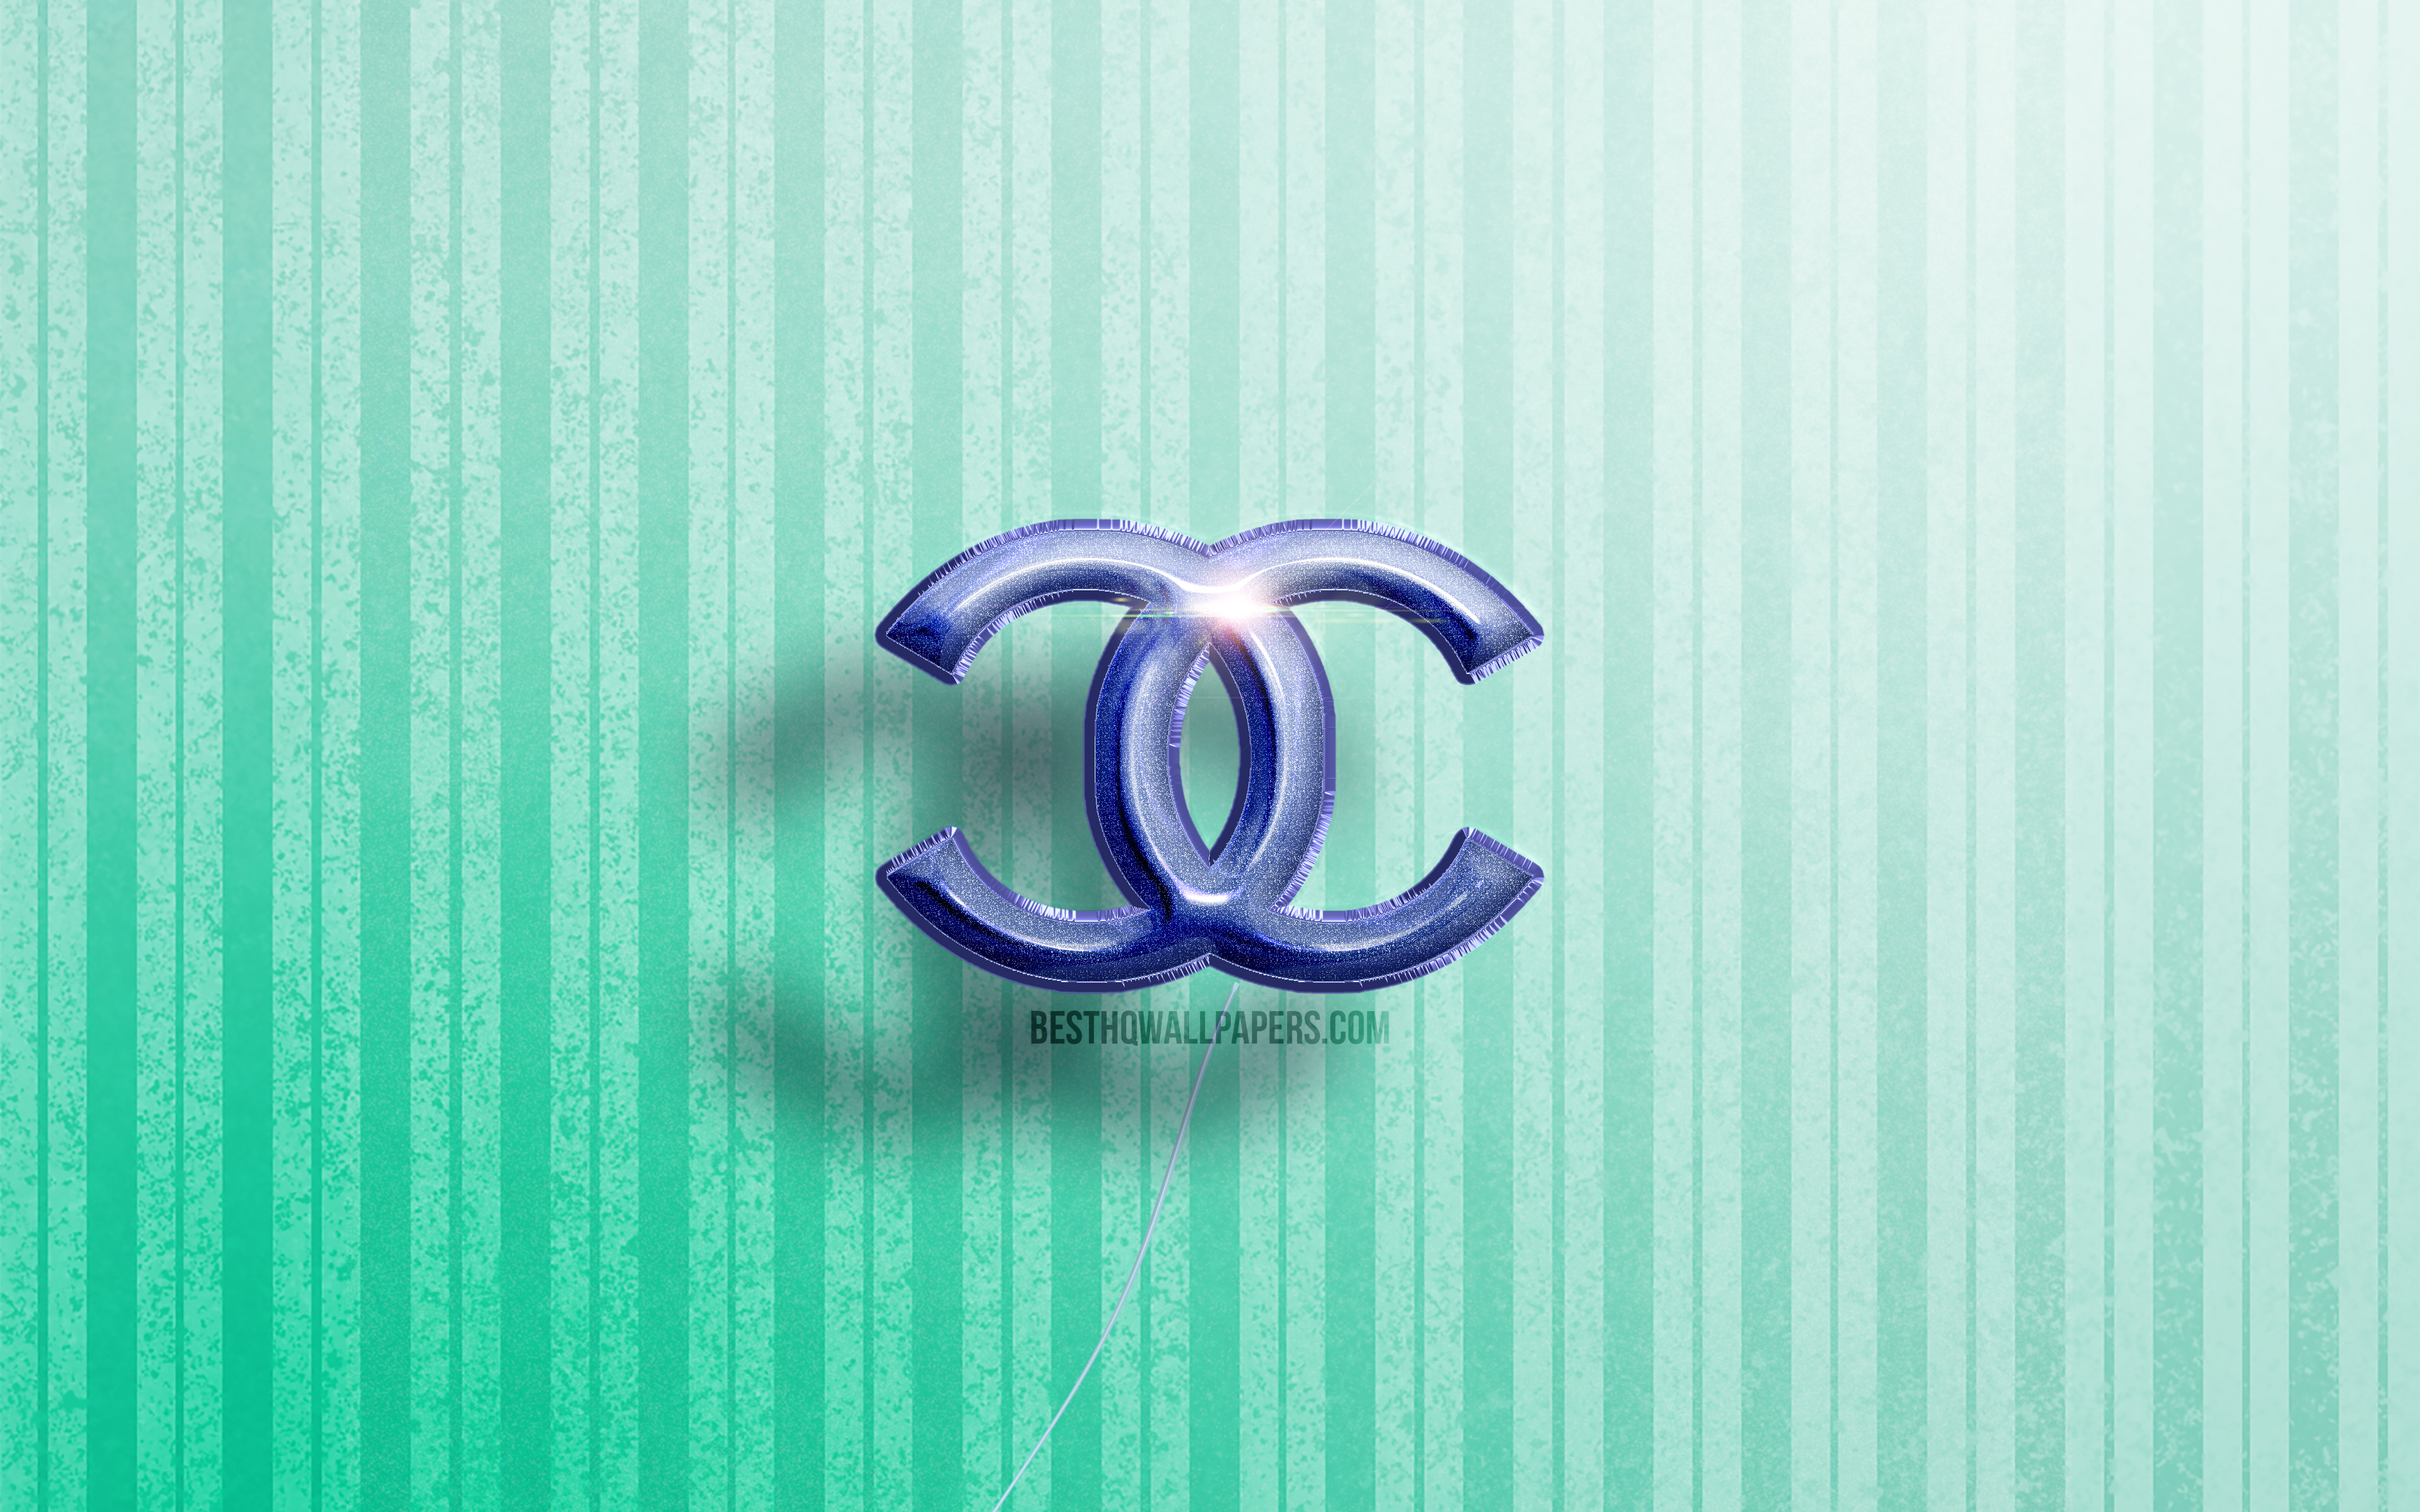 ダウンロード画像 4k シャネルの3dロゴ 青いリアルな風船 ファッションブランド シャネルのロゴ 青い木製の背景 Chanel シャネル 画面の解像度 3840x2400 壁紙デスクトップ上